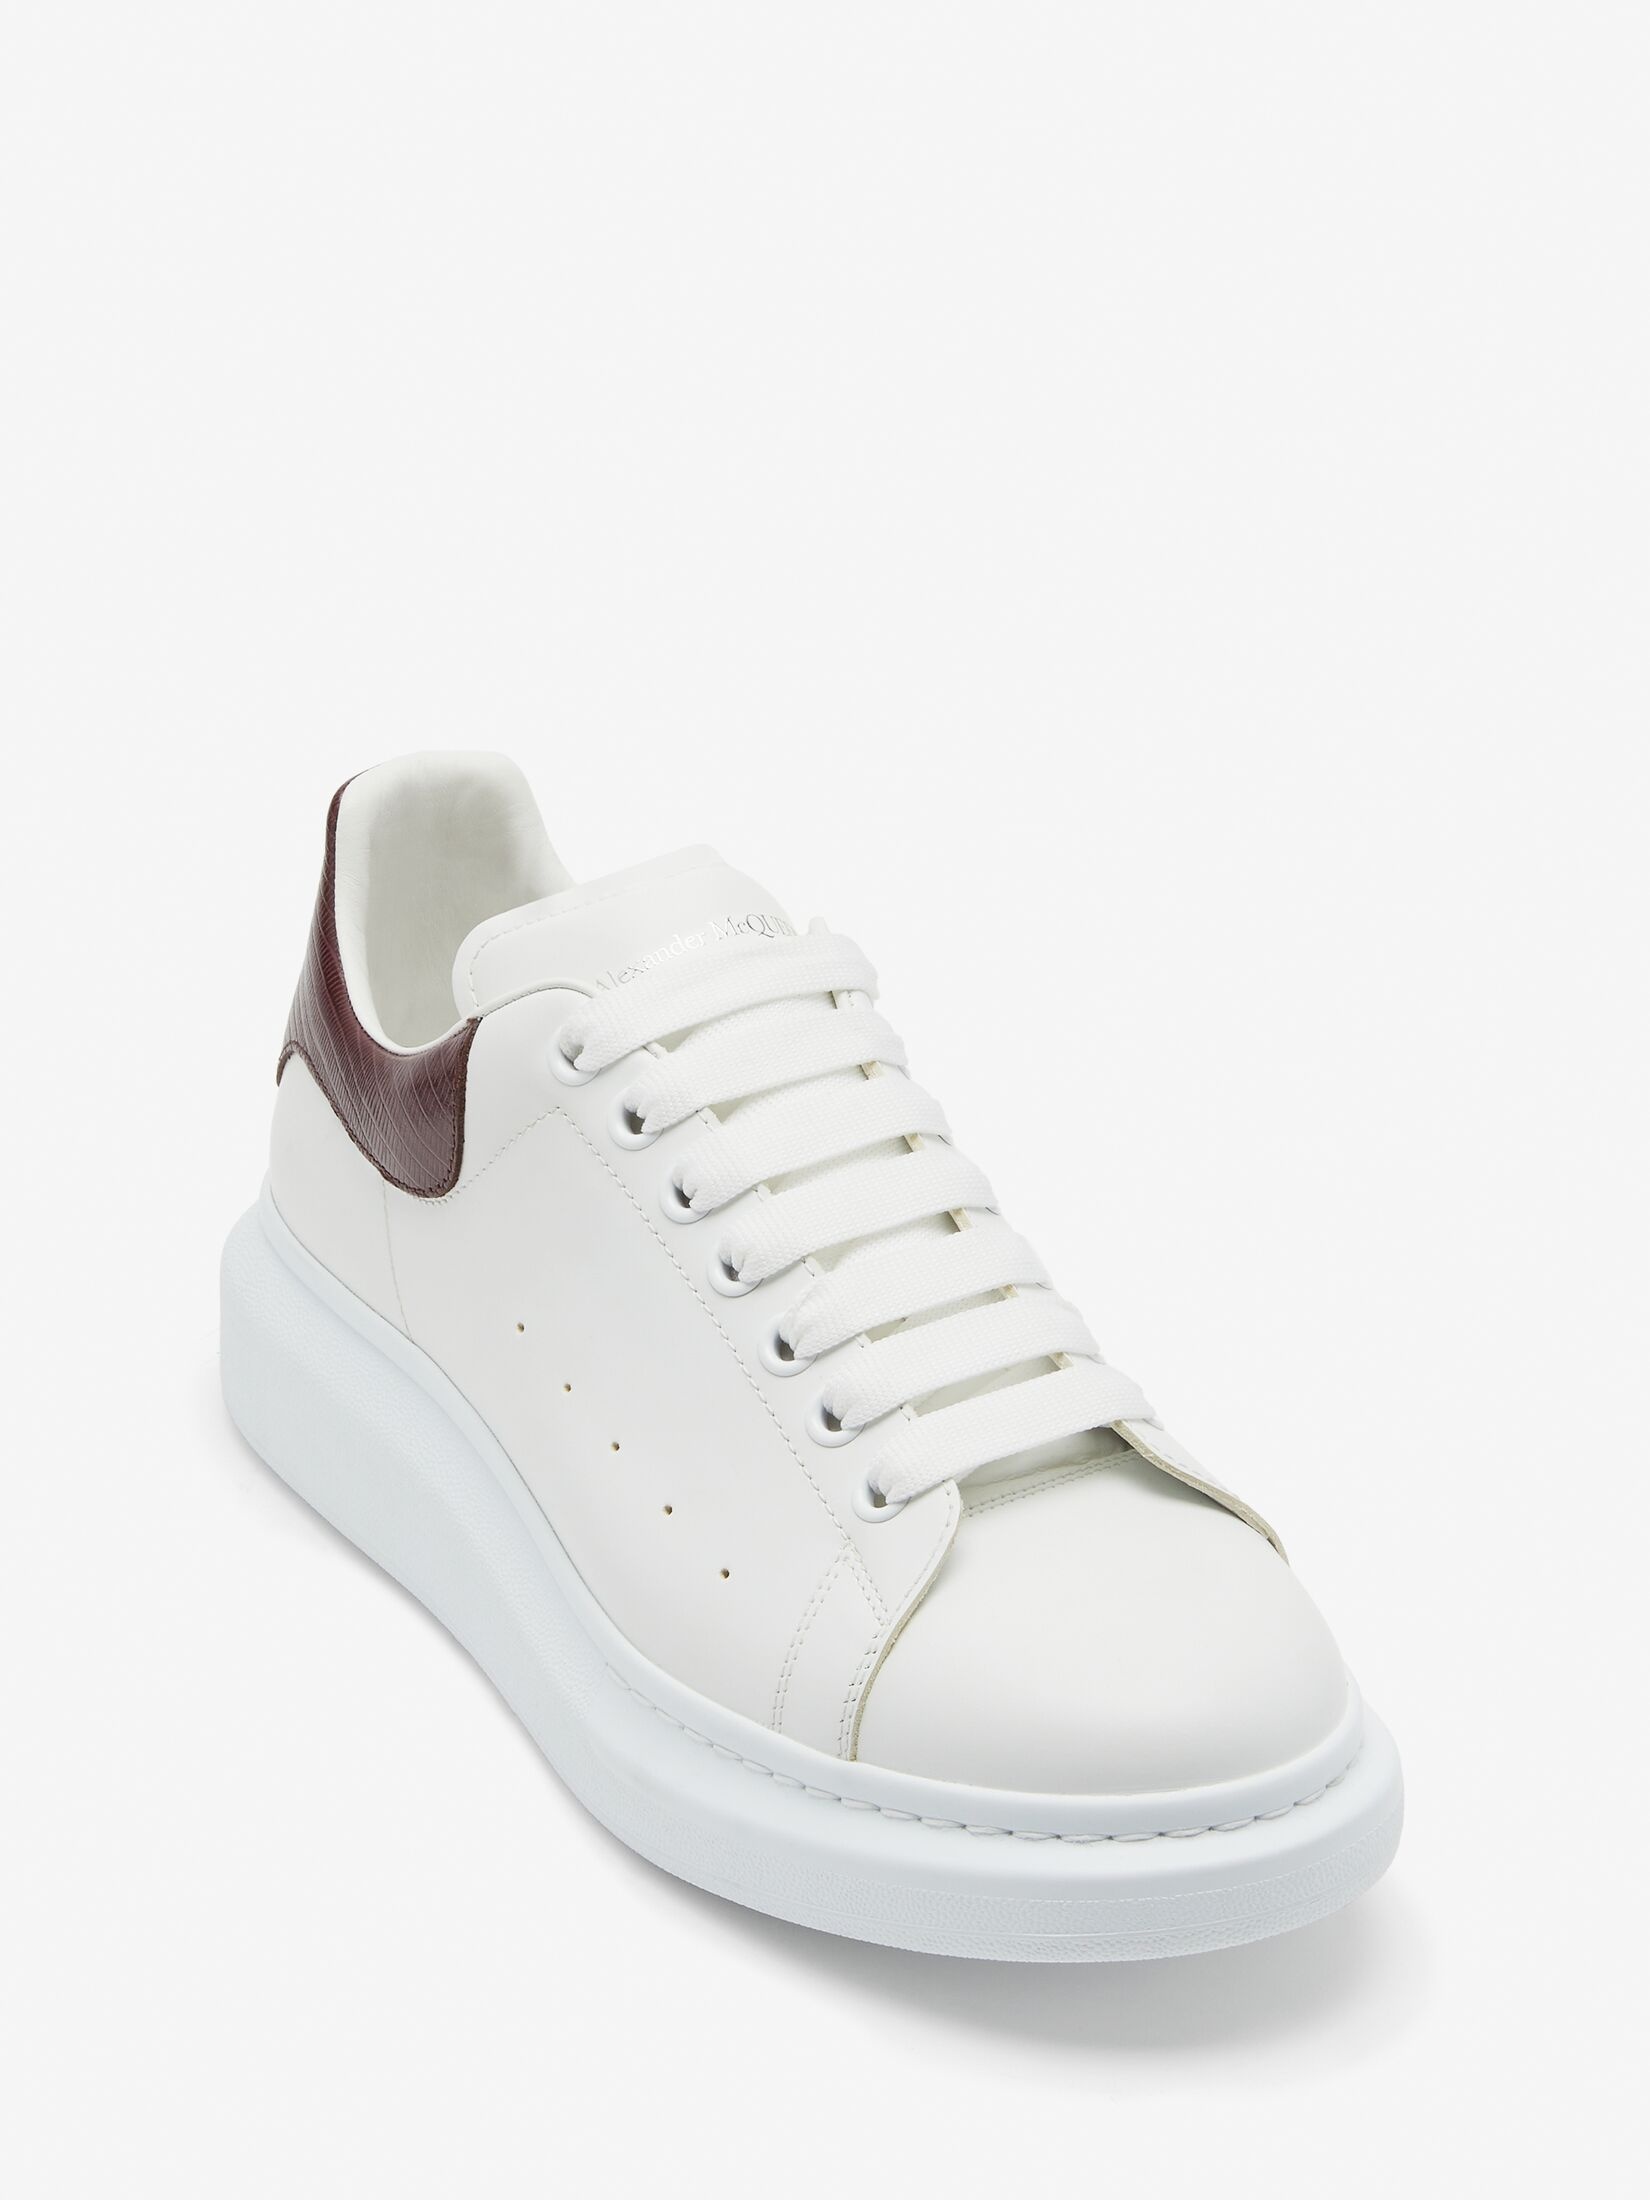 Men's Oversized Sneaker in White/burgundy - 5